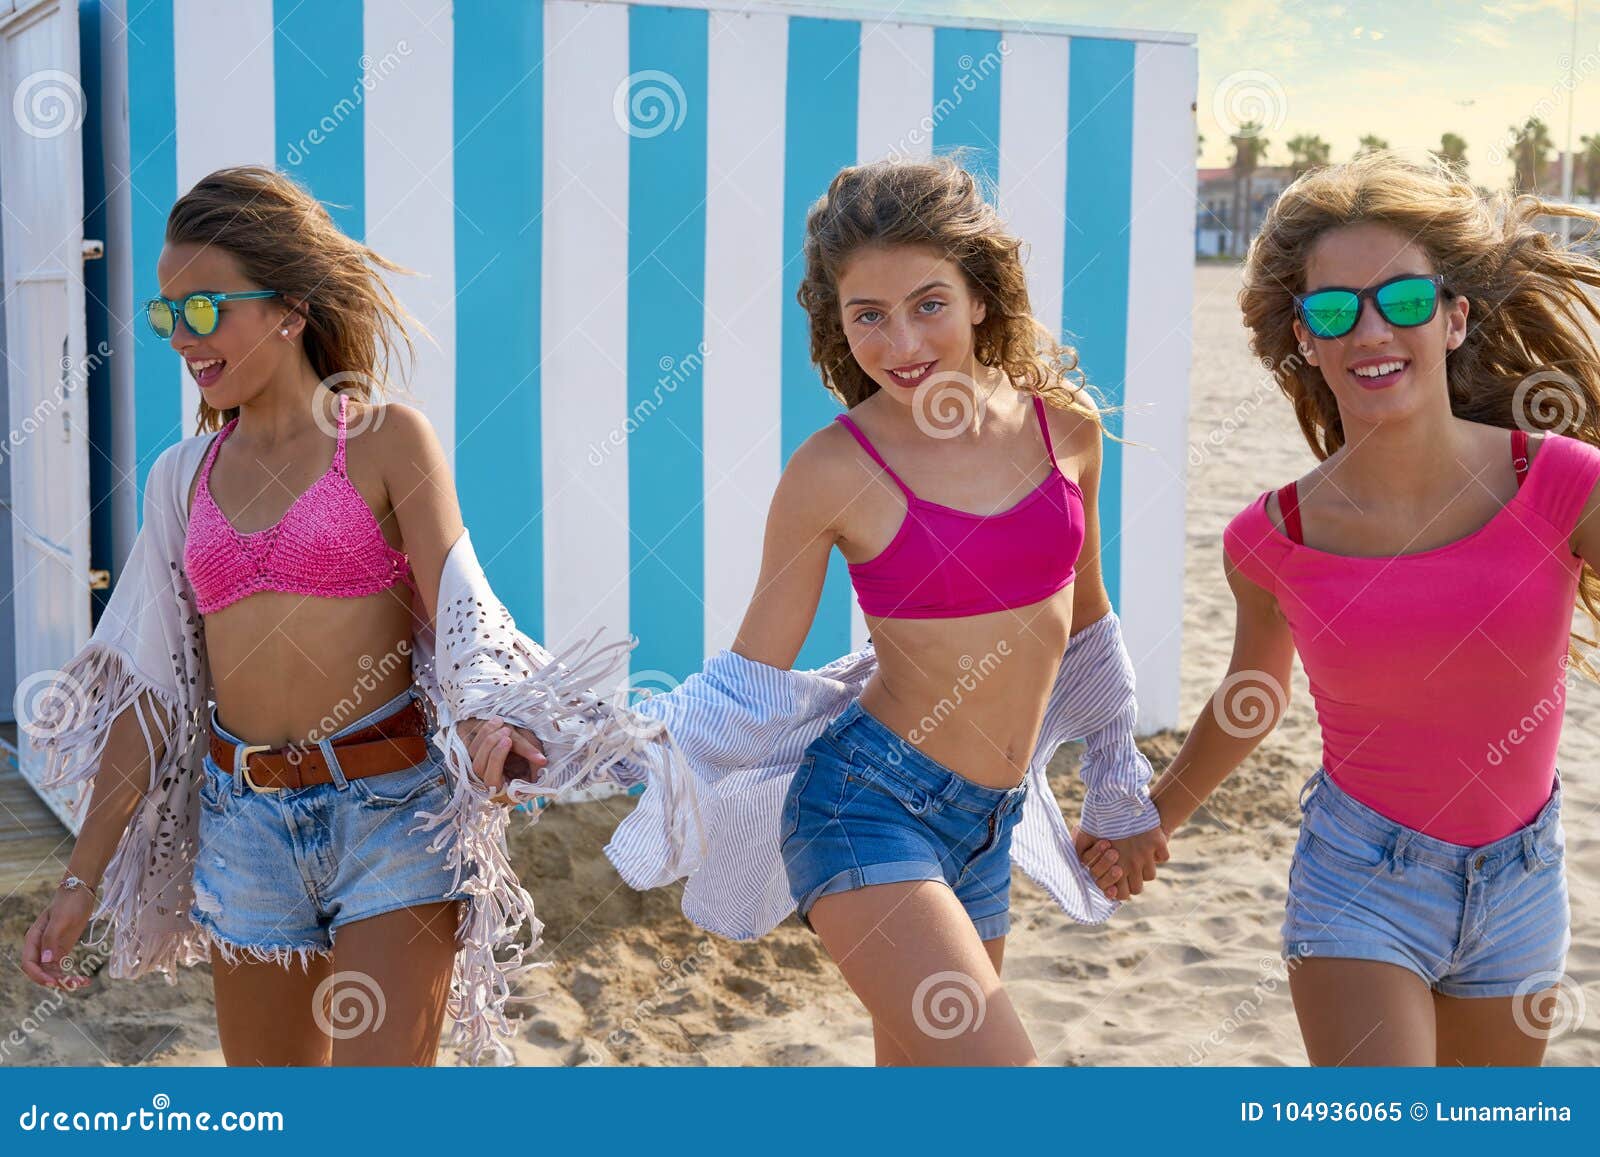 Teen girls at beach